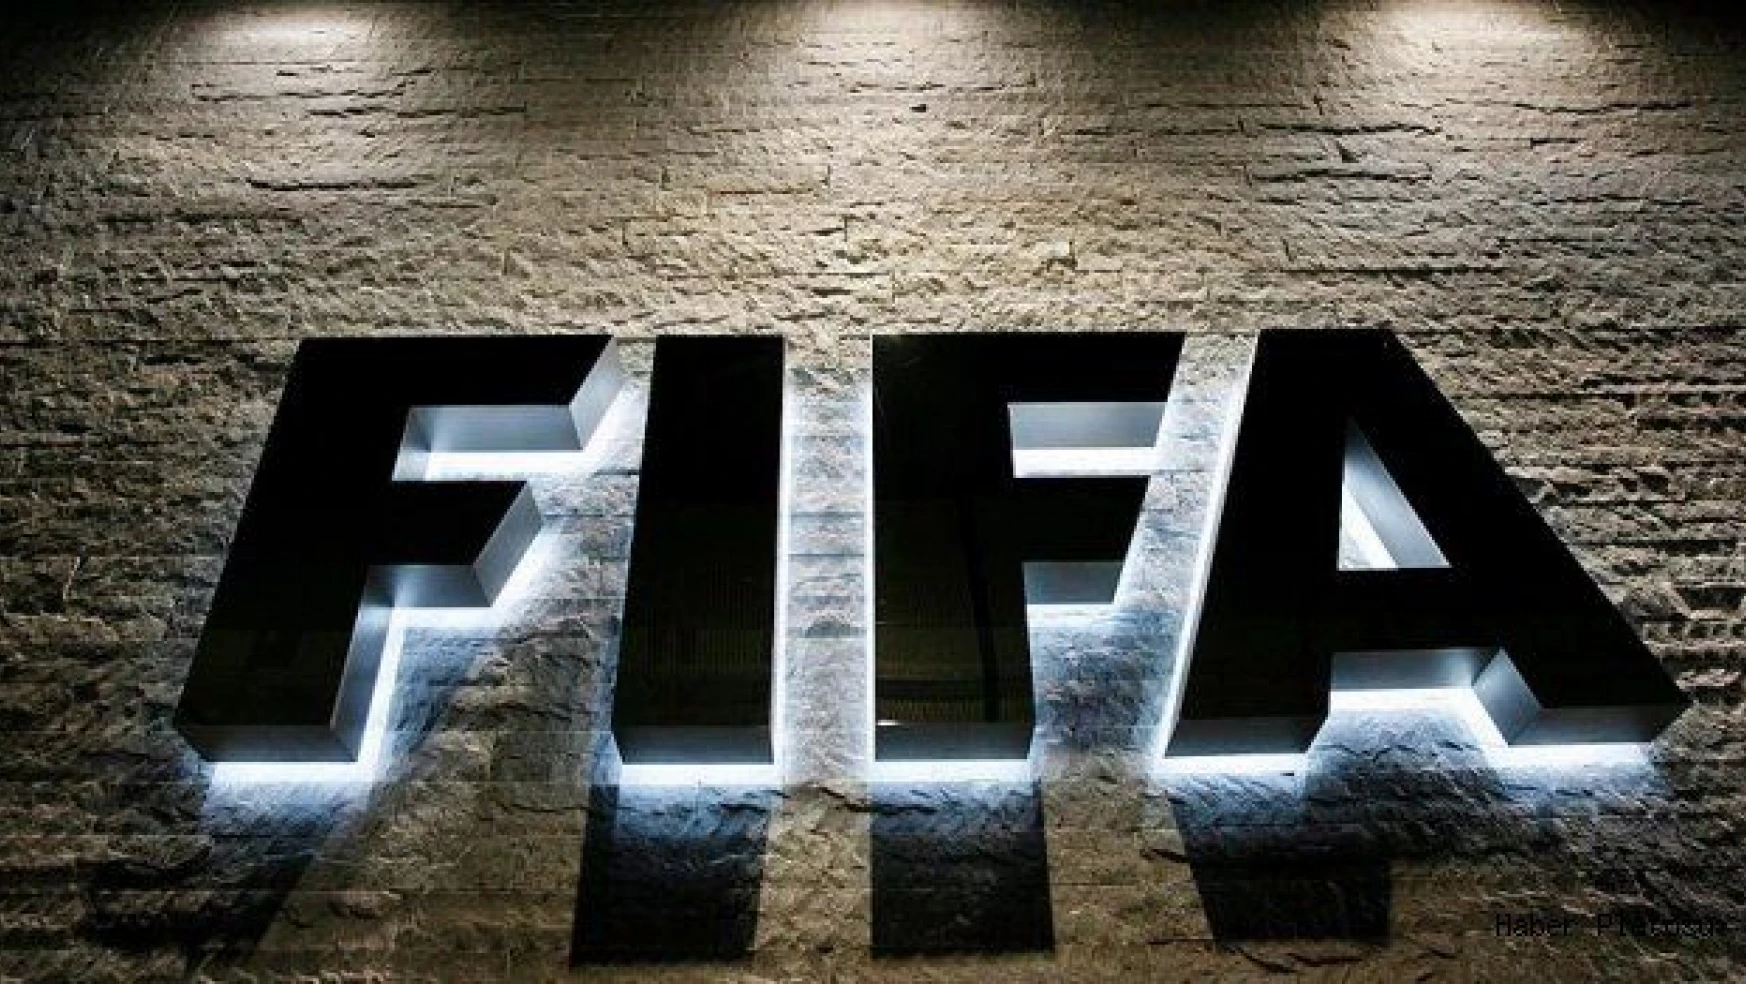 FIFA başkanının görev süresine sınırlama